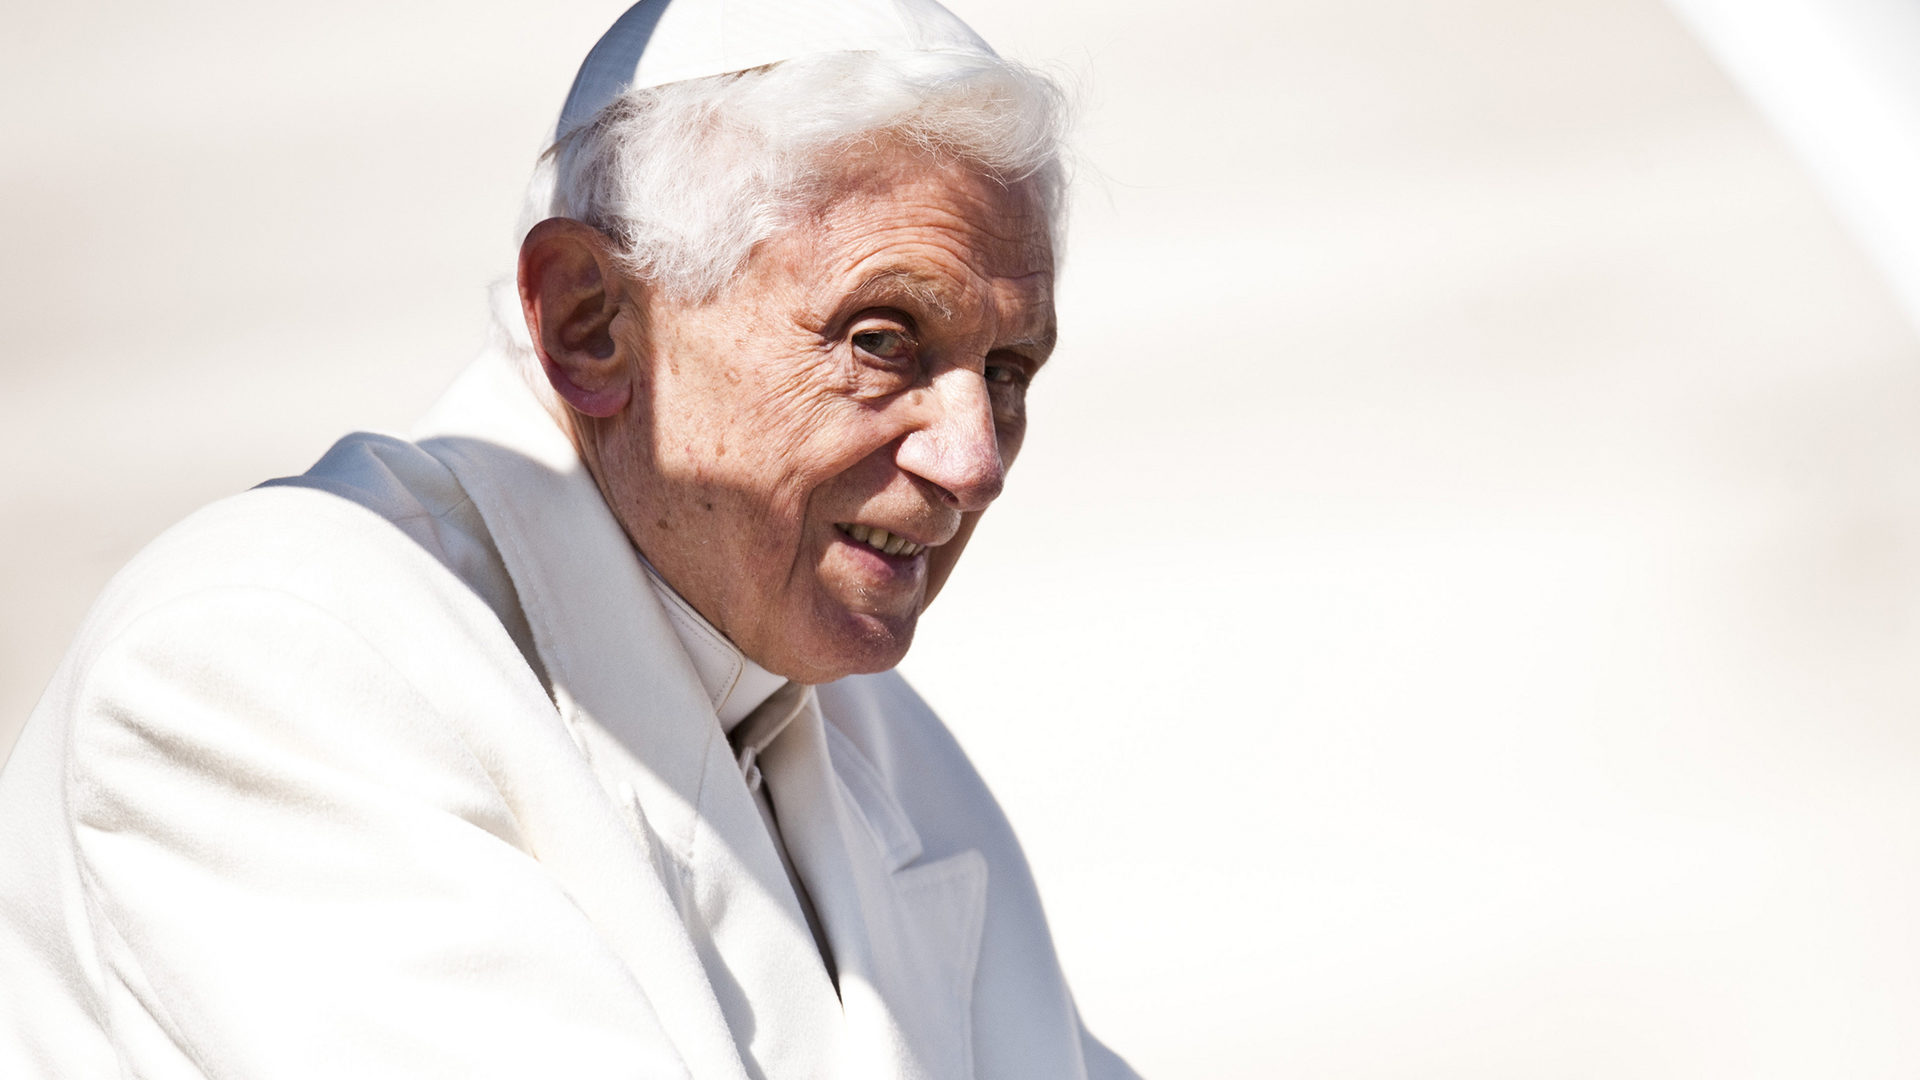 Le pape Benoît XVI a renoncé au pontificat  en 2013  | © flickr/catholicism/CC BY-NC-SA 2.0